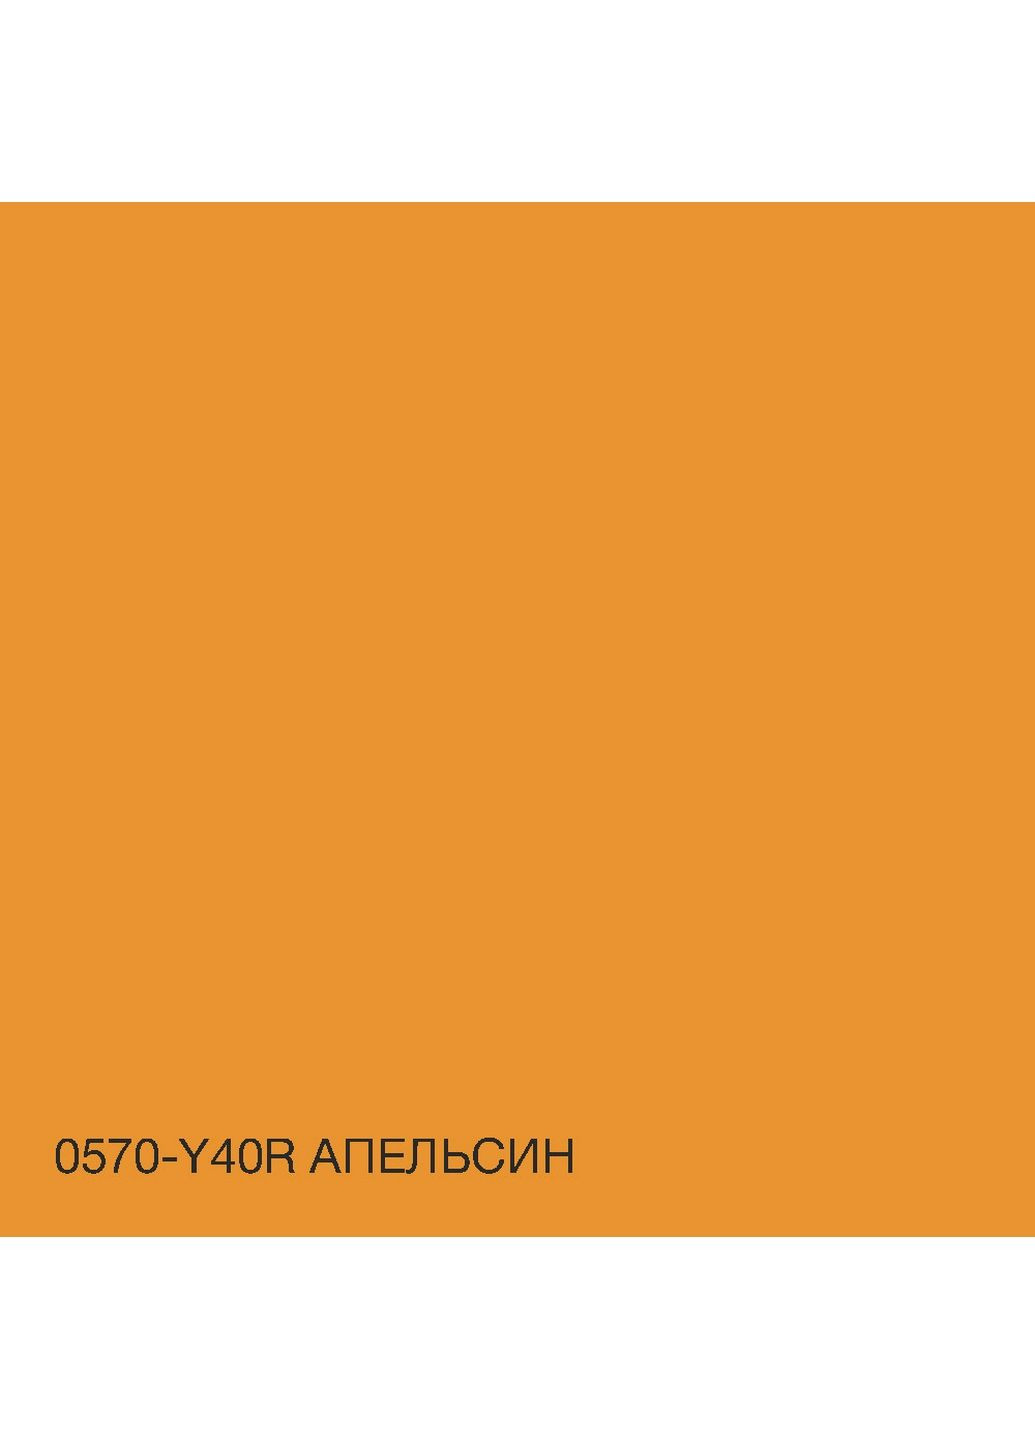 Интерьерная латексная краска 0570-Y40R 5 л SkyLine (283326448)